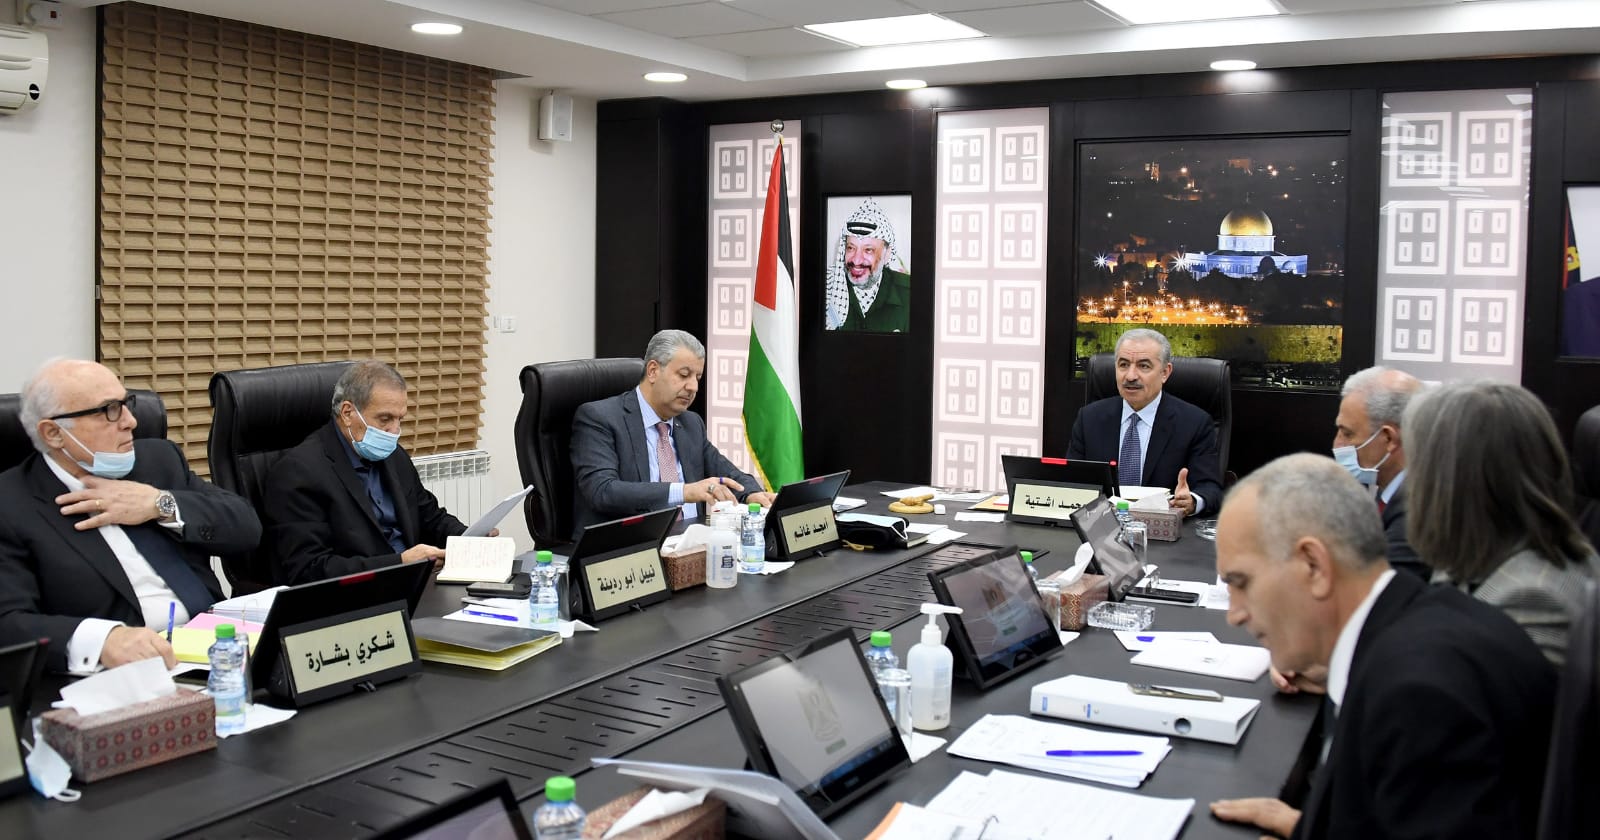 طالع قرارات مجلس الوزراء الفلسطيني خلال جلسته الأسبوعية 